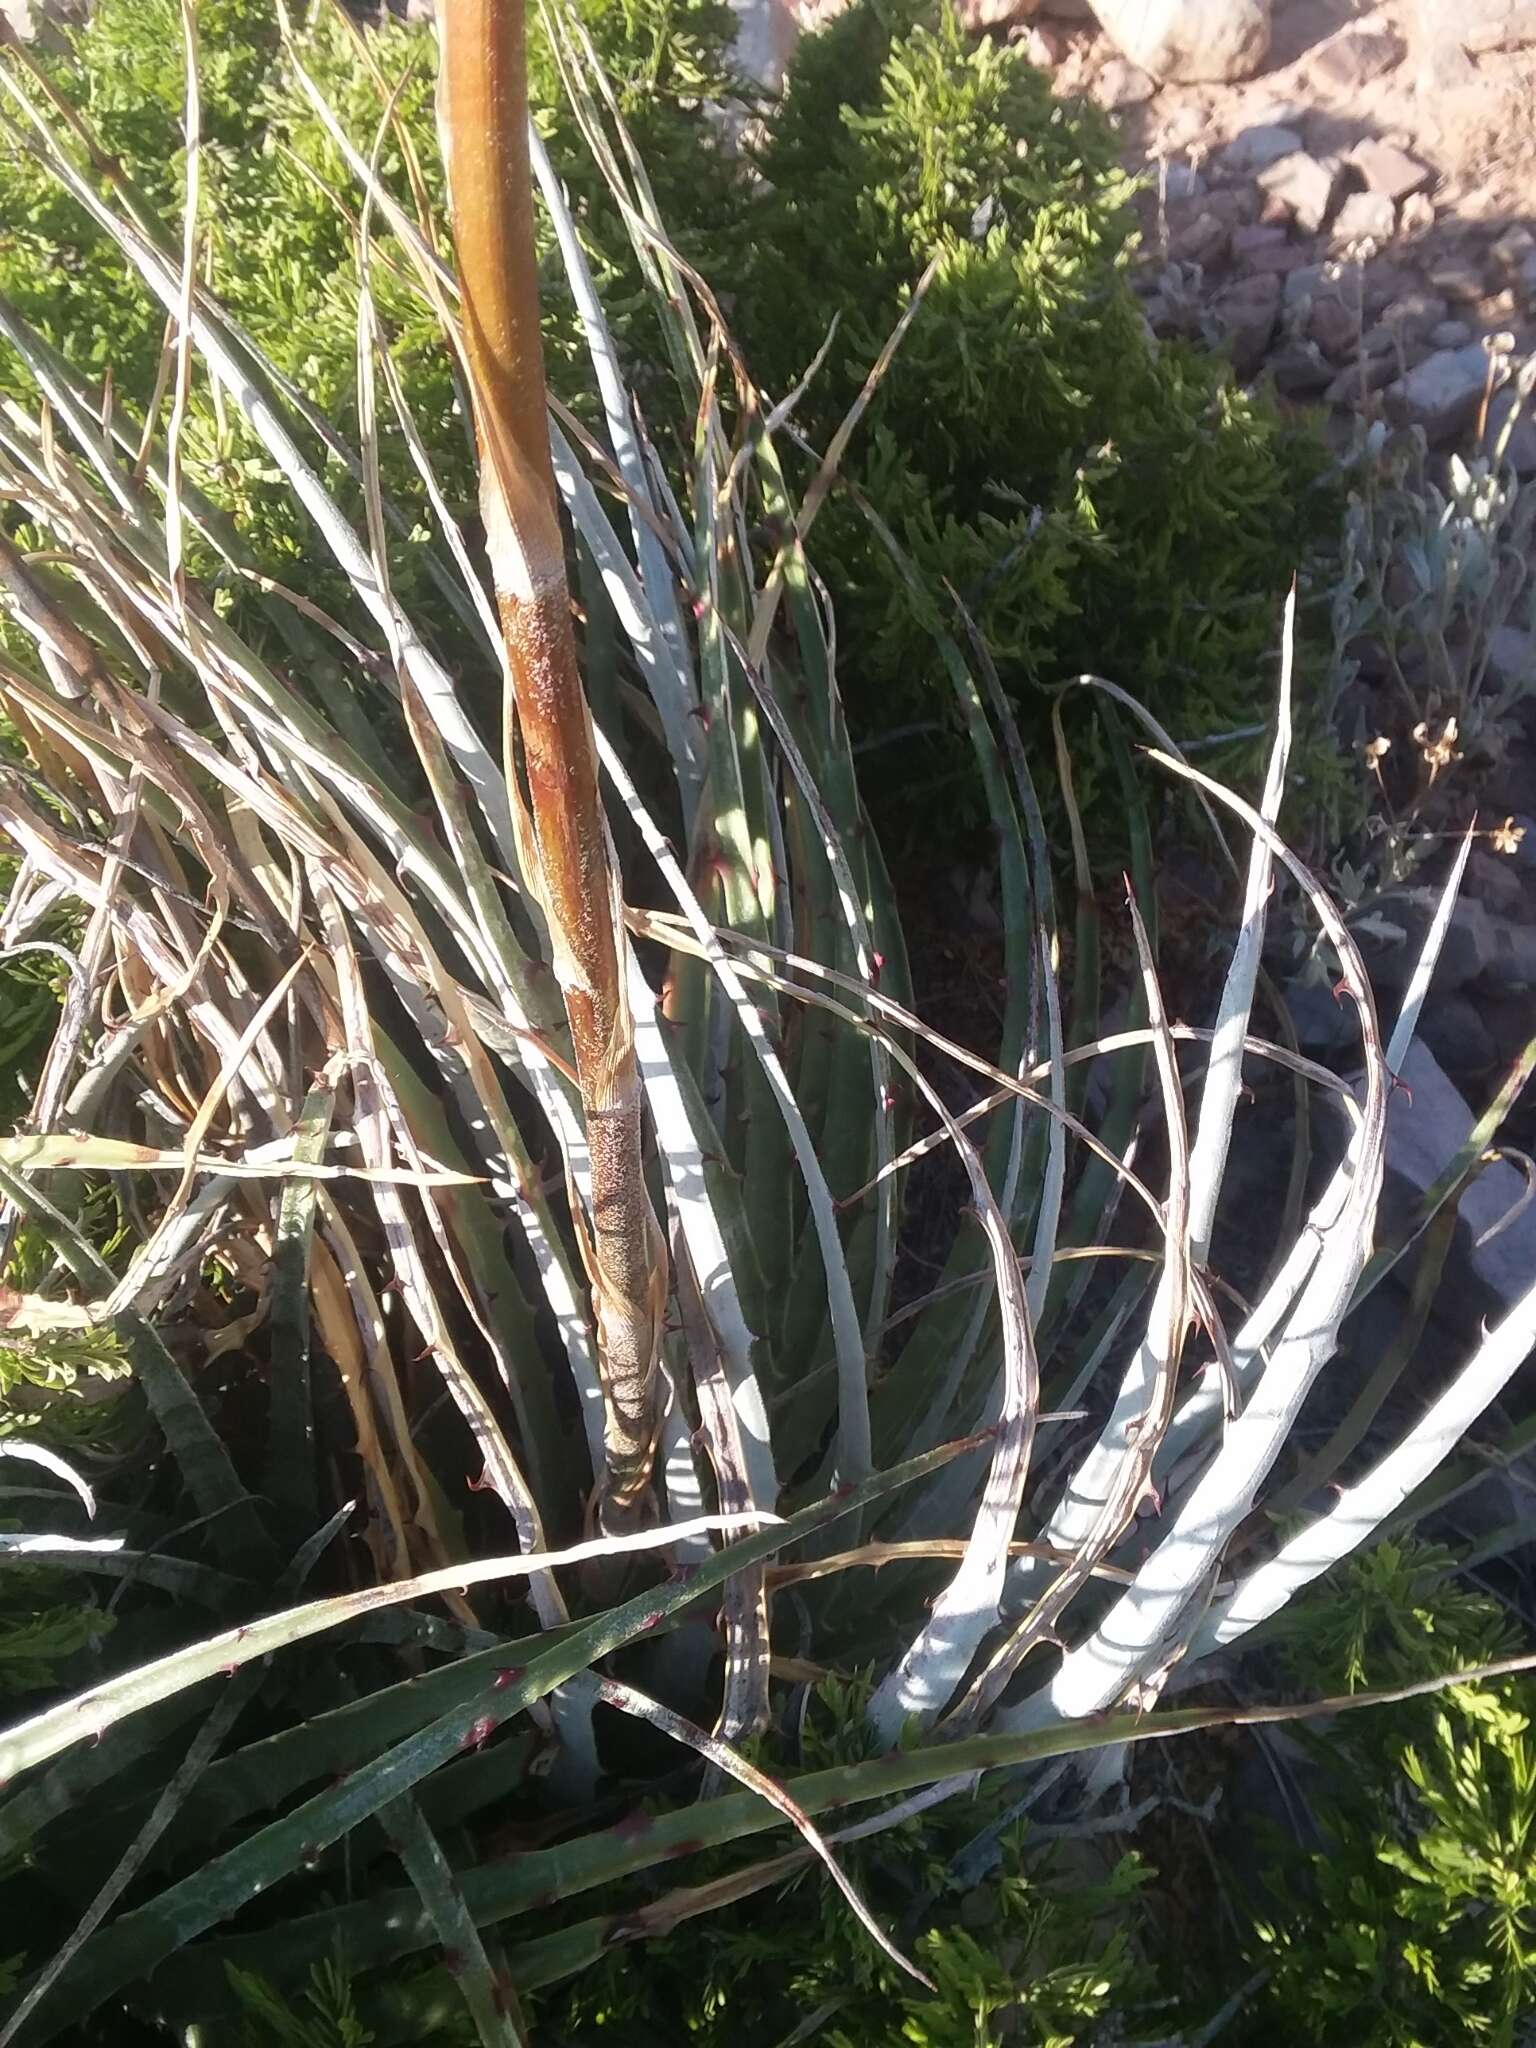 Image of Texas false agave